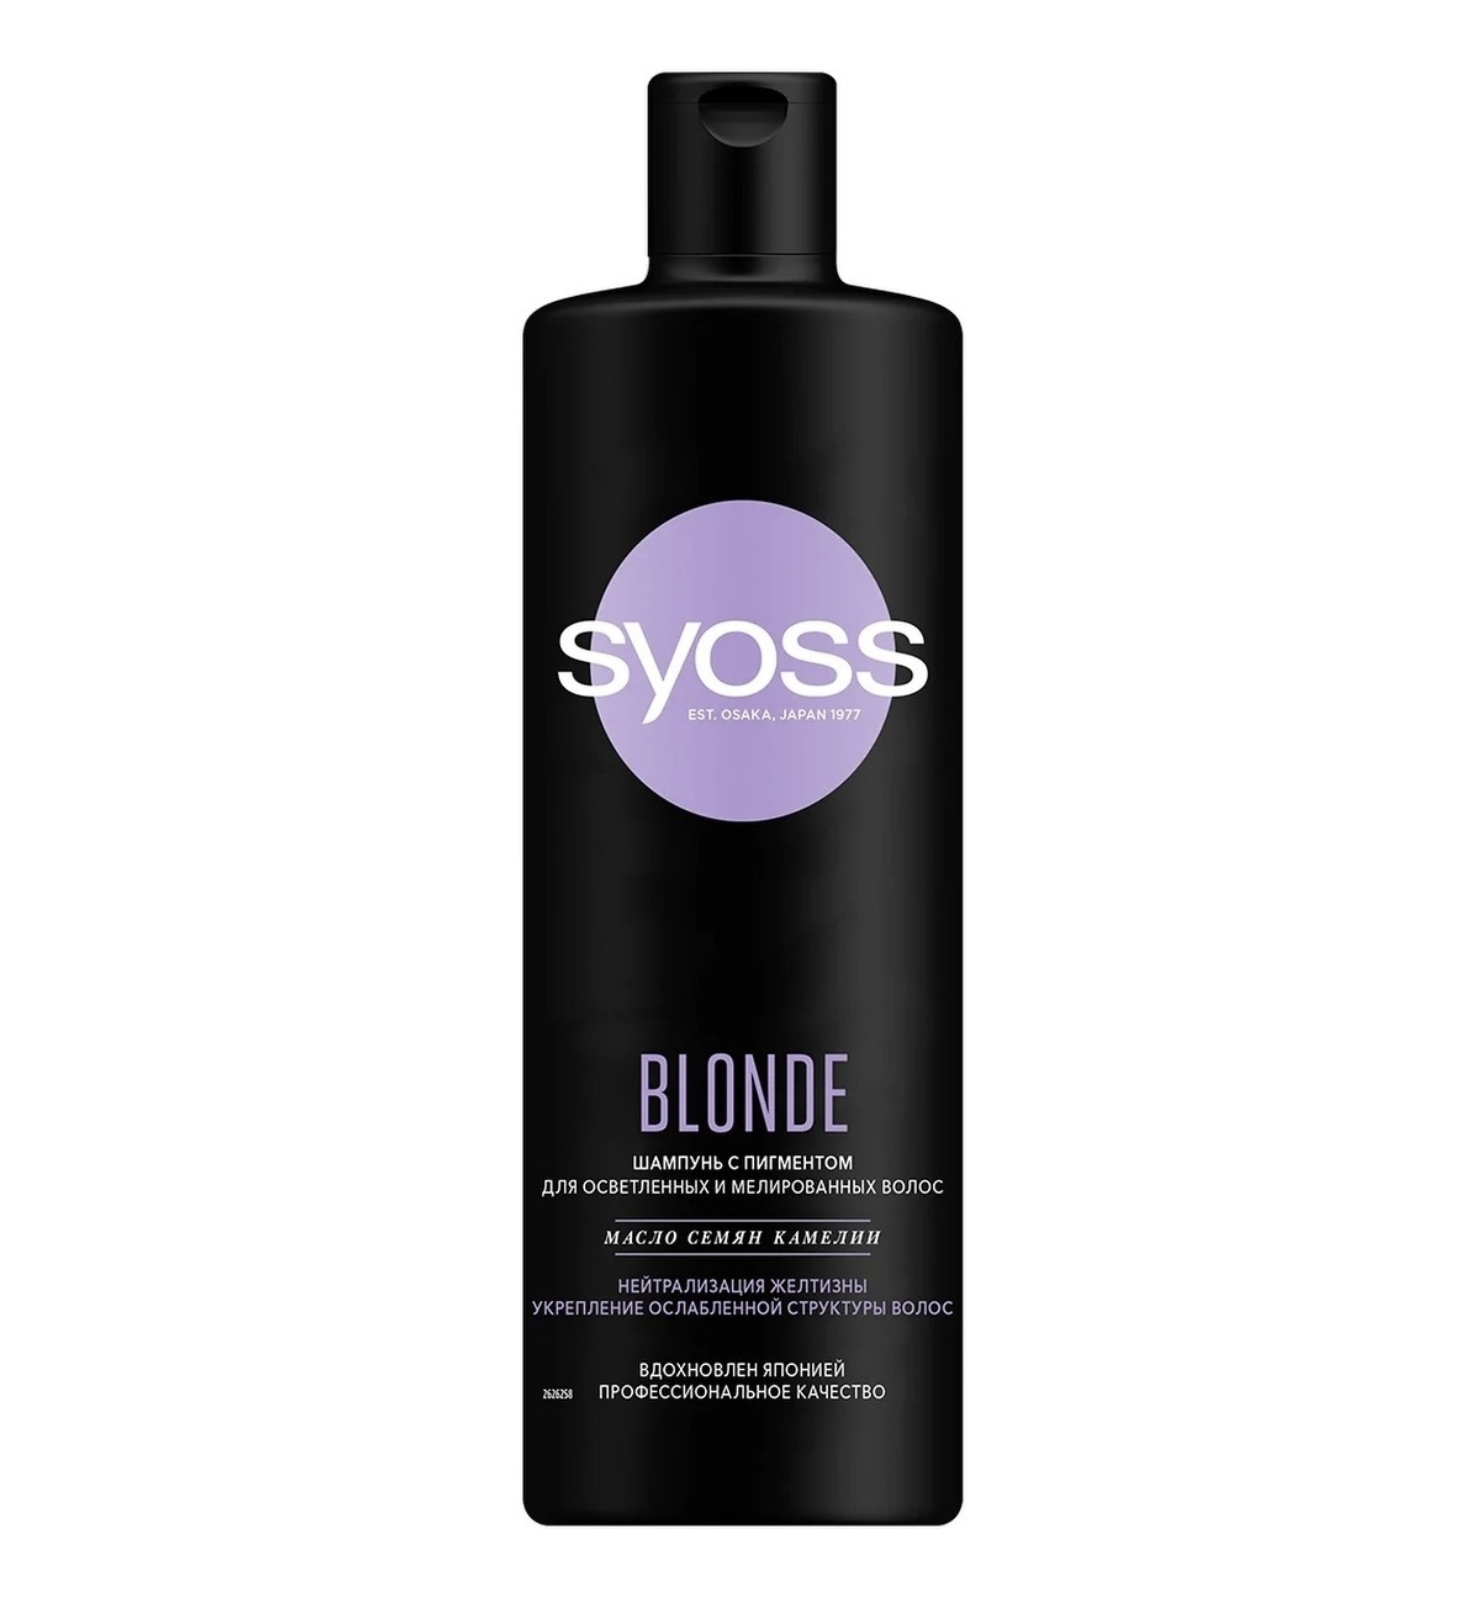   / Syoss Blonde -         450 